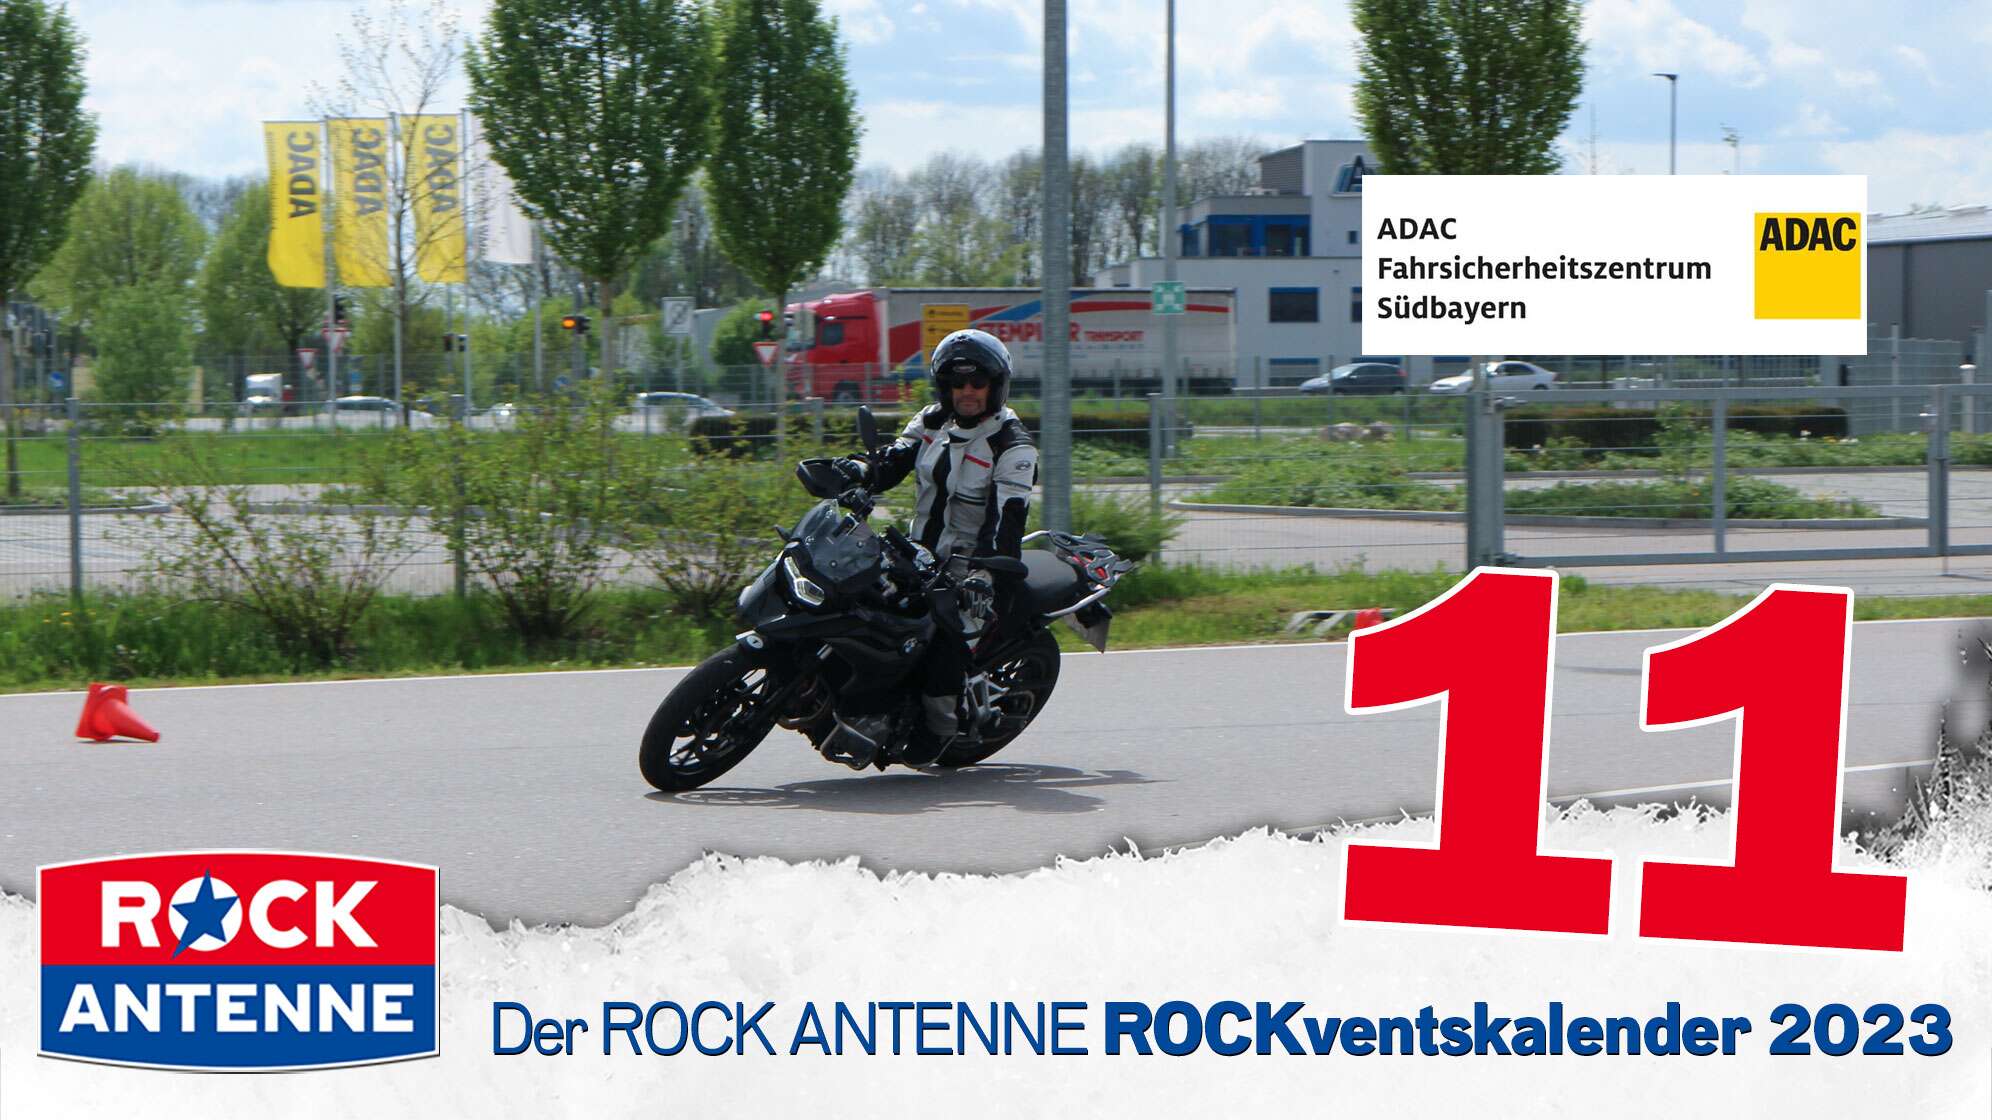 ROCK ANTENNE ROCKventskalender Türchen 11: Personaltraining beim ADAC Fahrsicherheitszentrum Südbayern e.V. für 2 Personen